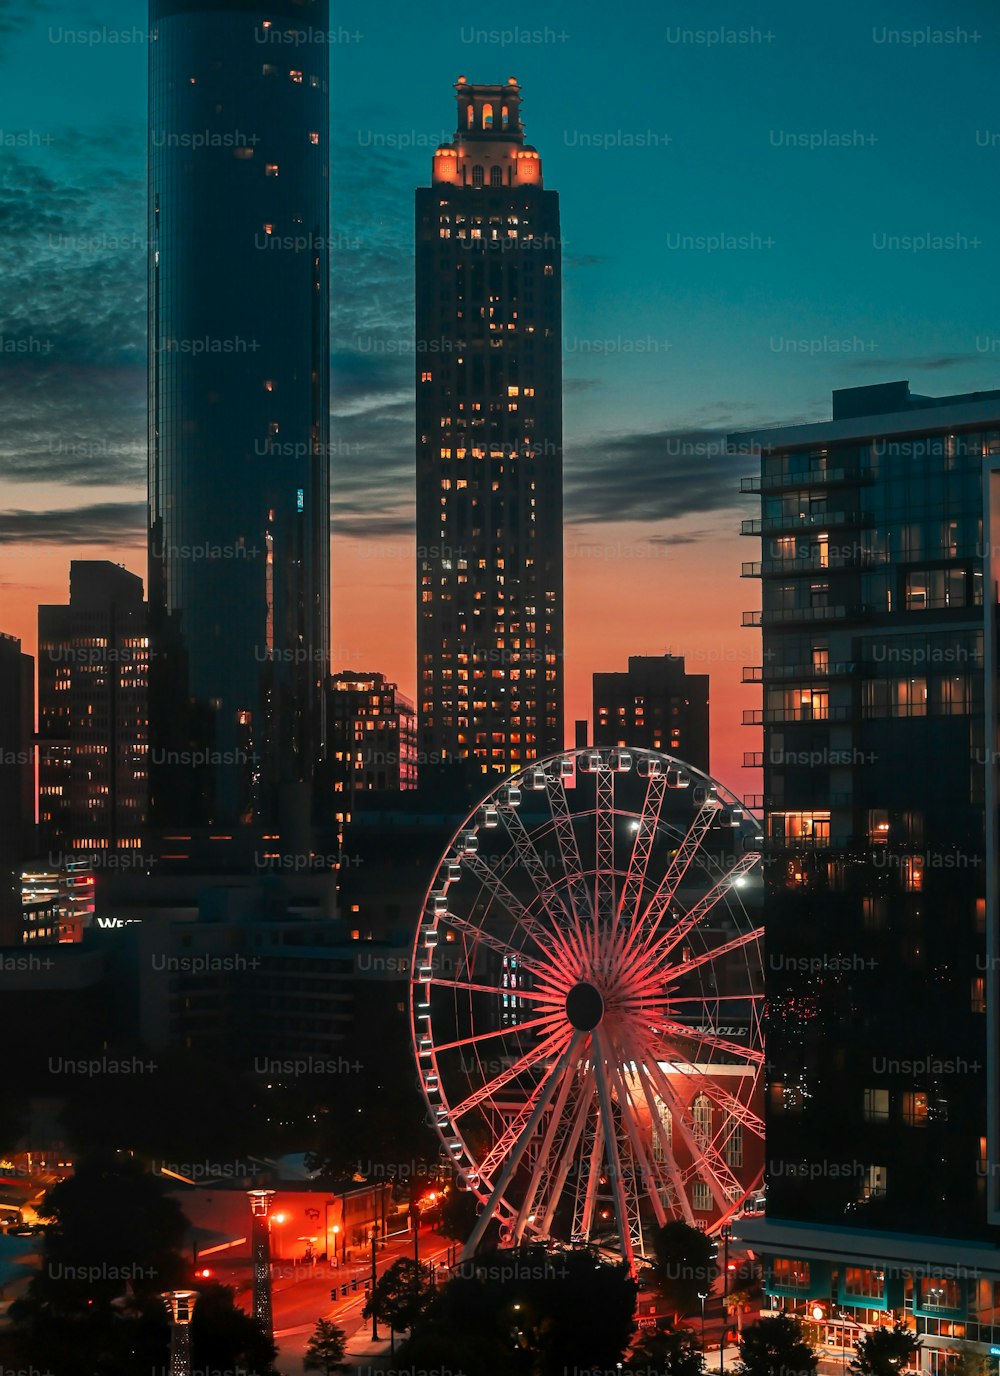 Uma vista aérea da cidade de Atlanta com uma variedade de arranha-céus altos com uma grande roda gigante em primeiro plano